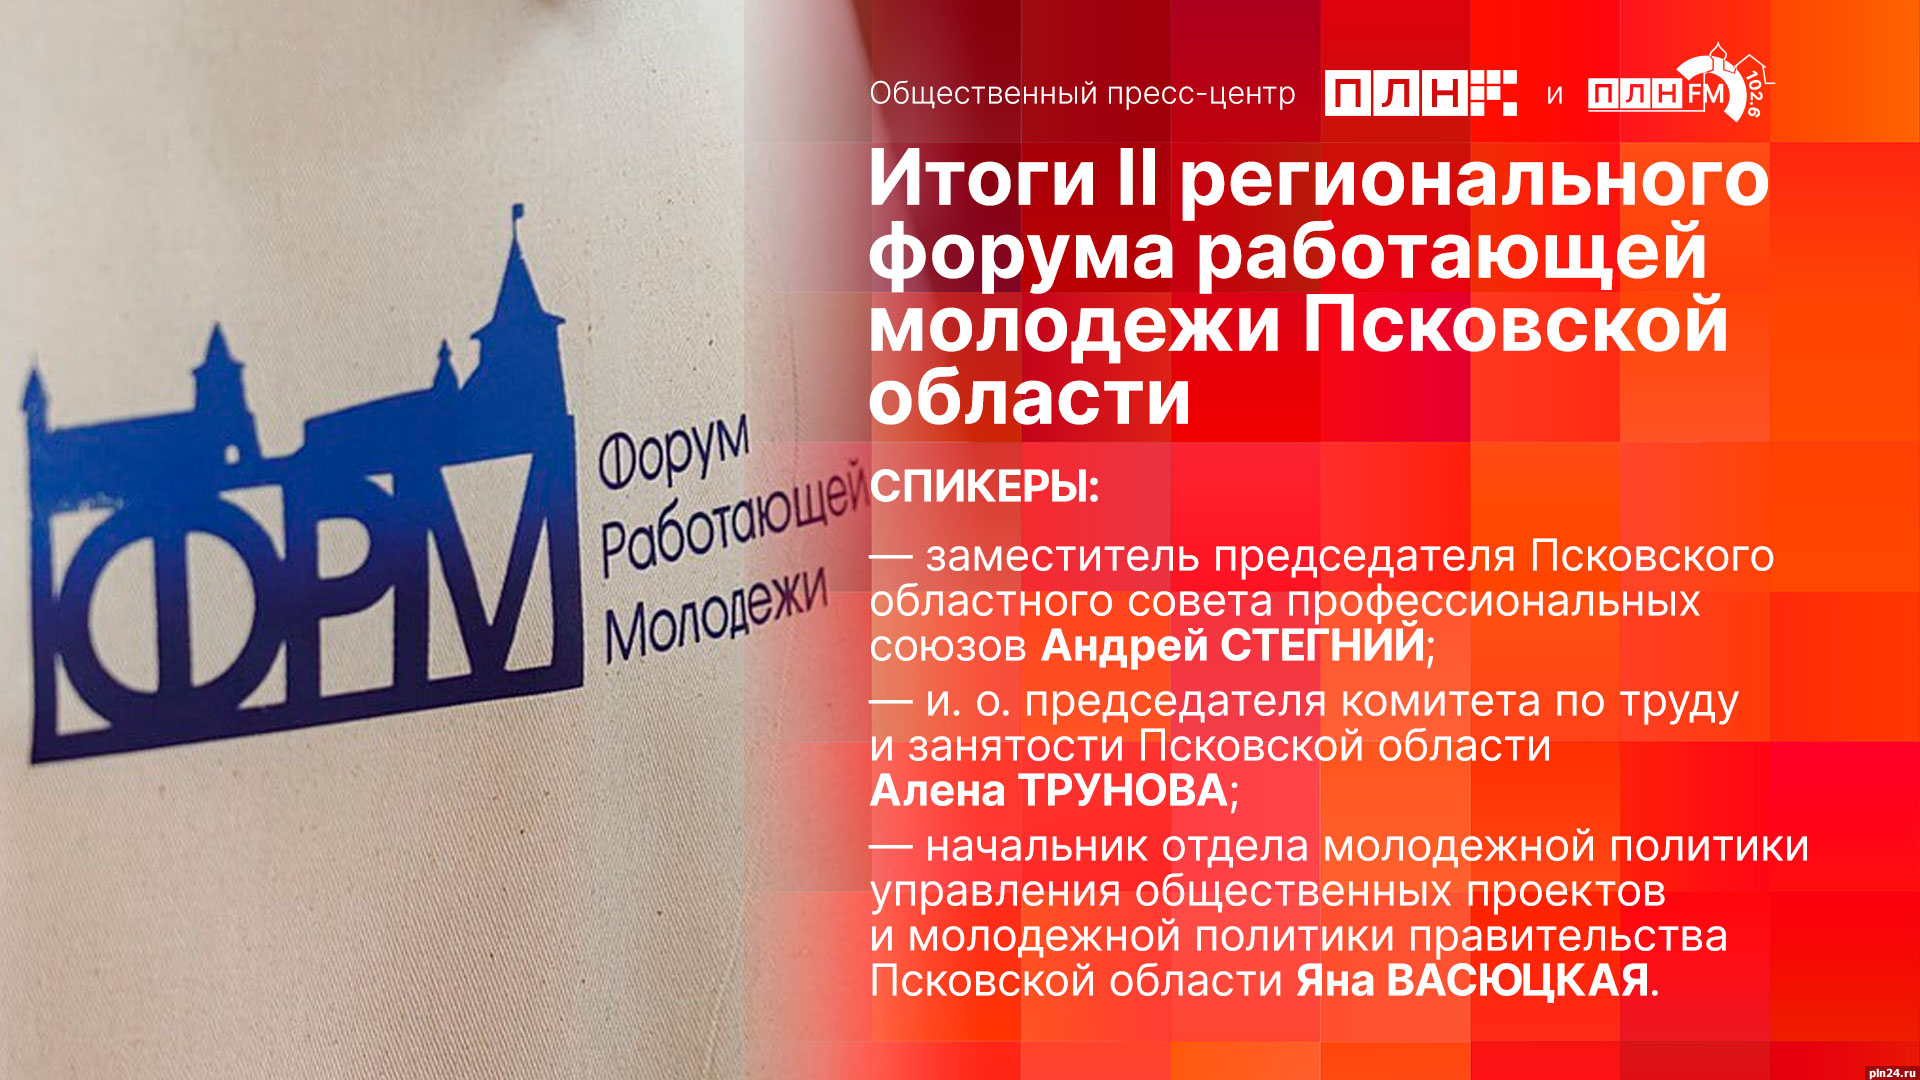 Итоги II регионального форума работающей молодежи Псковской области подведут в пресс-центре ПЛН